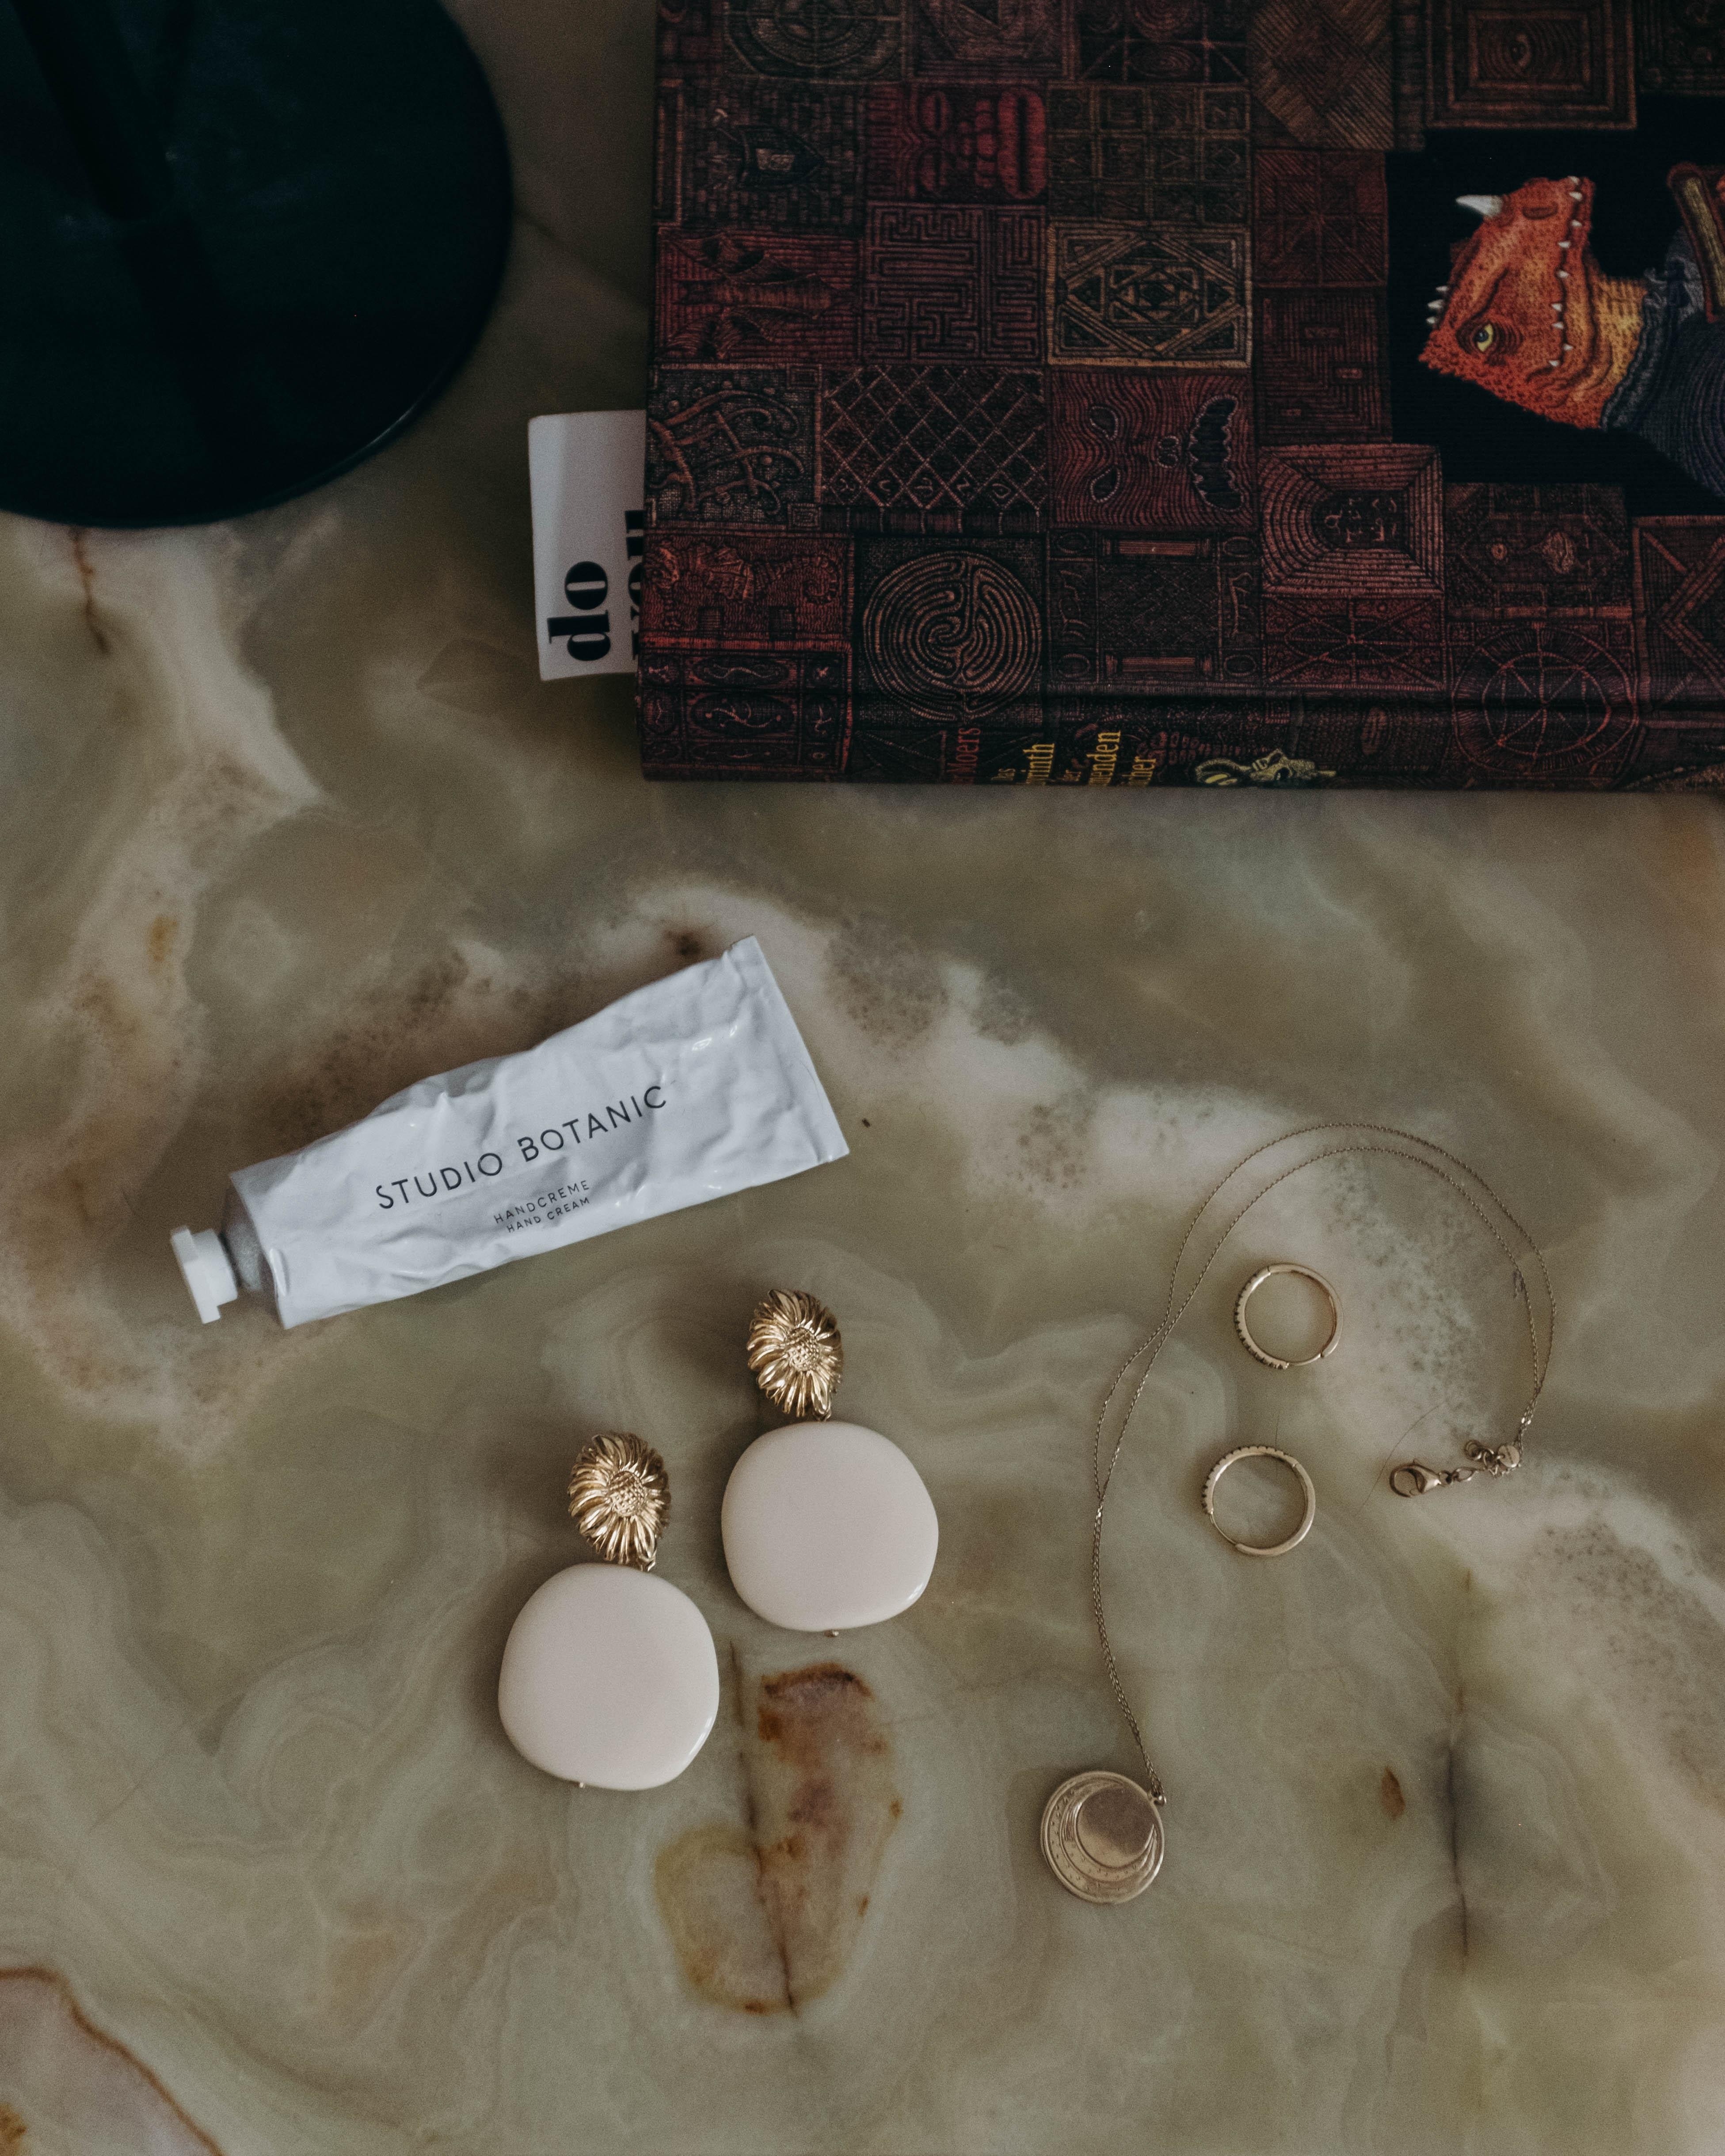 Nachttisch ✨ auf eBay gefunden und das kleine marmor Schmuckstück sofort geschnappt 🥰 #nachttisch #ebay #marmor 